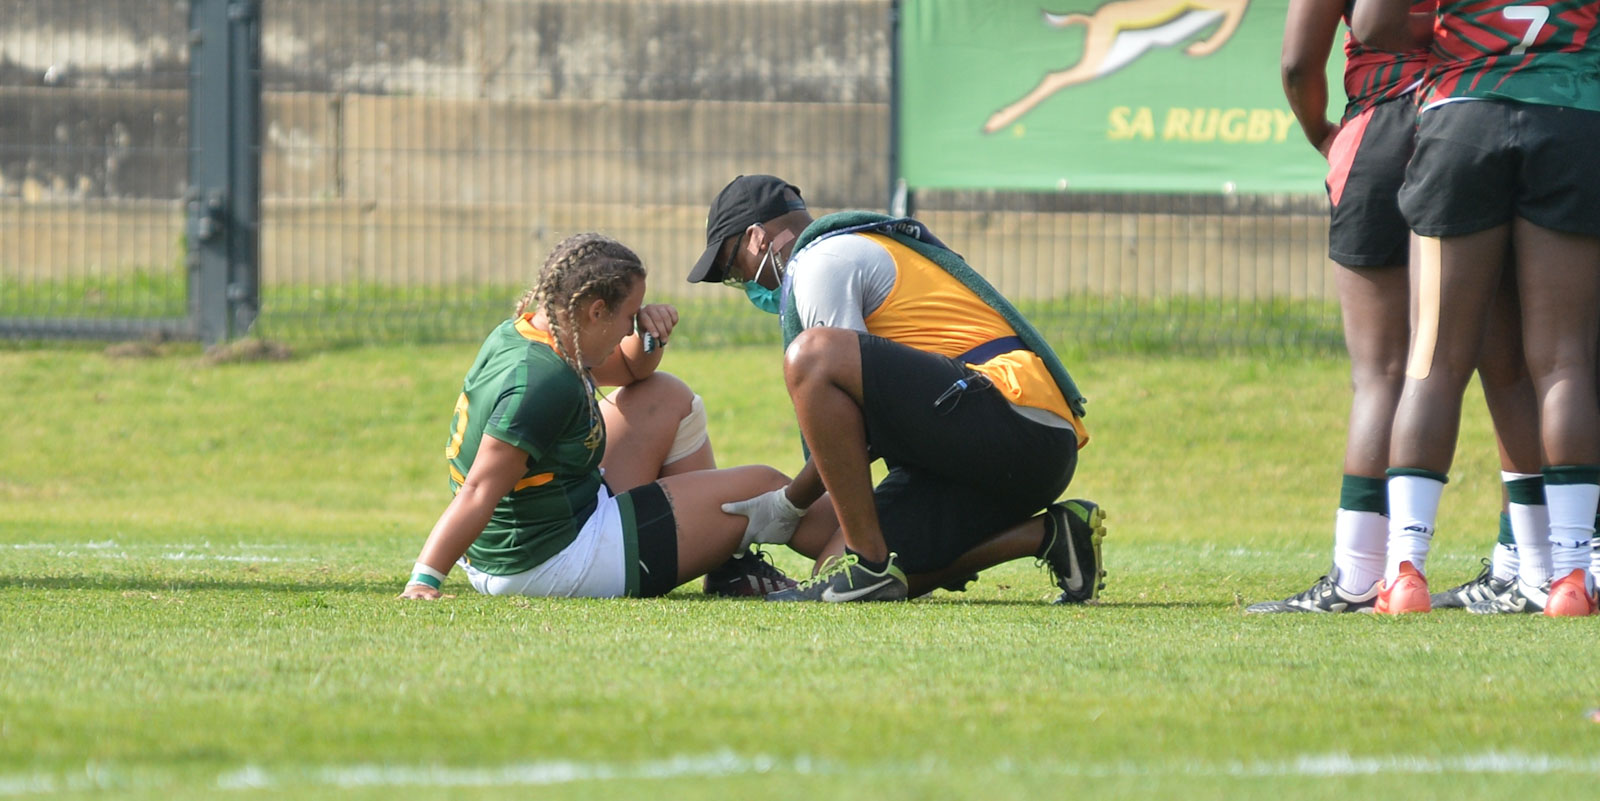 Gunter injured her knee against Kenya in August.